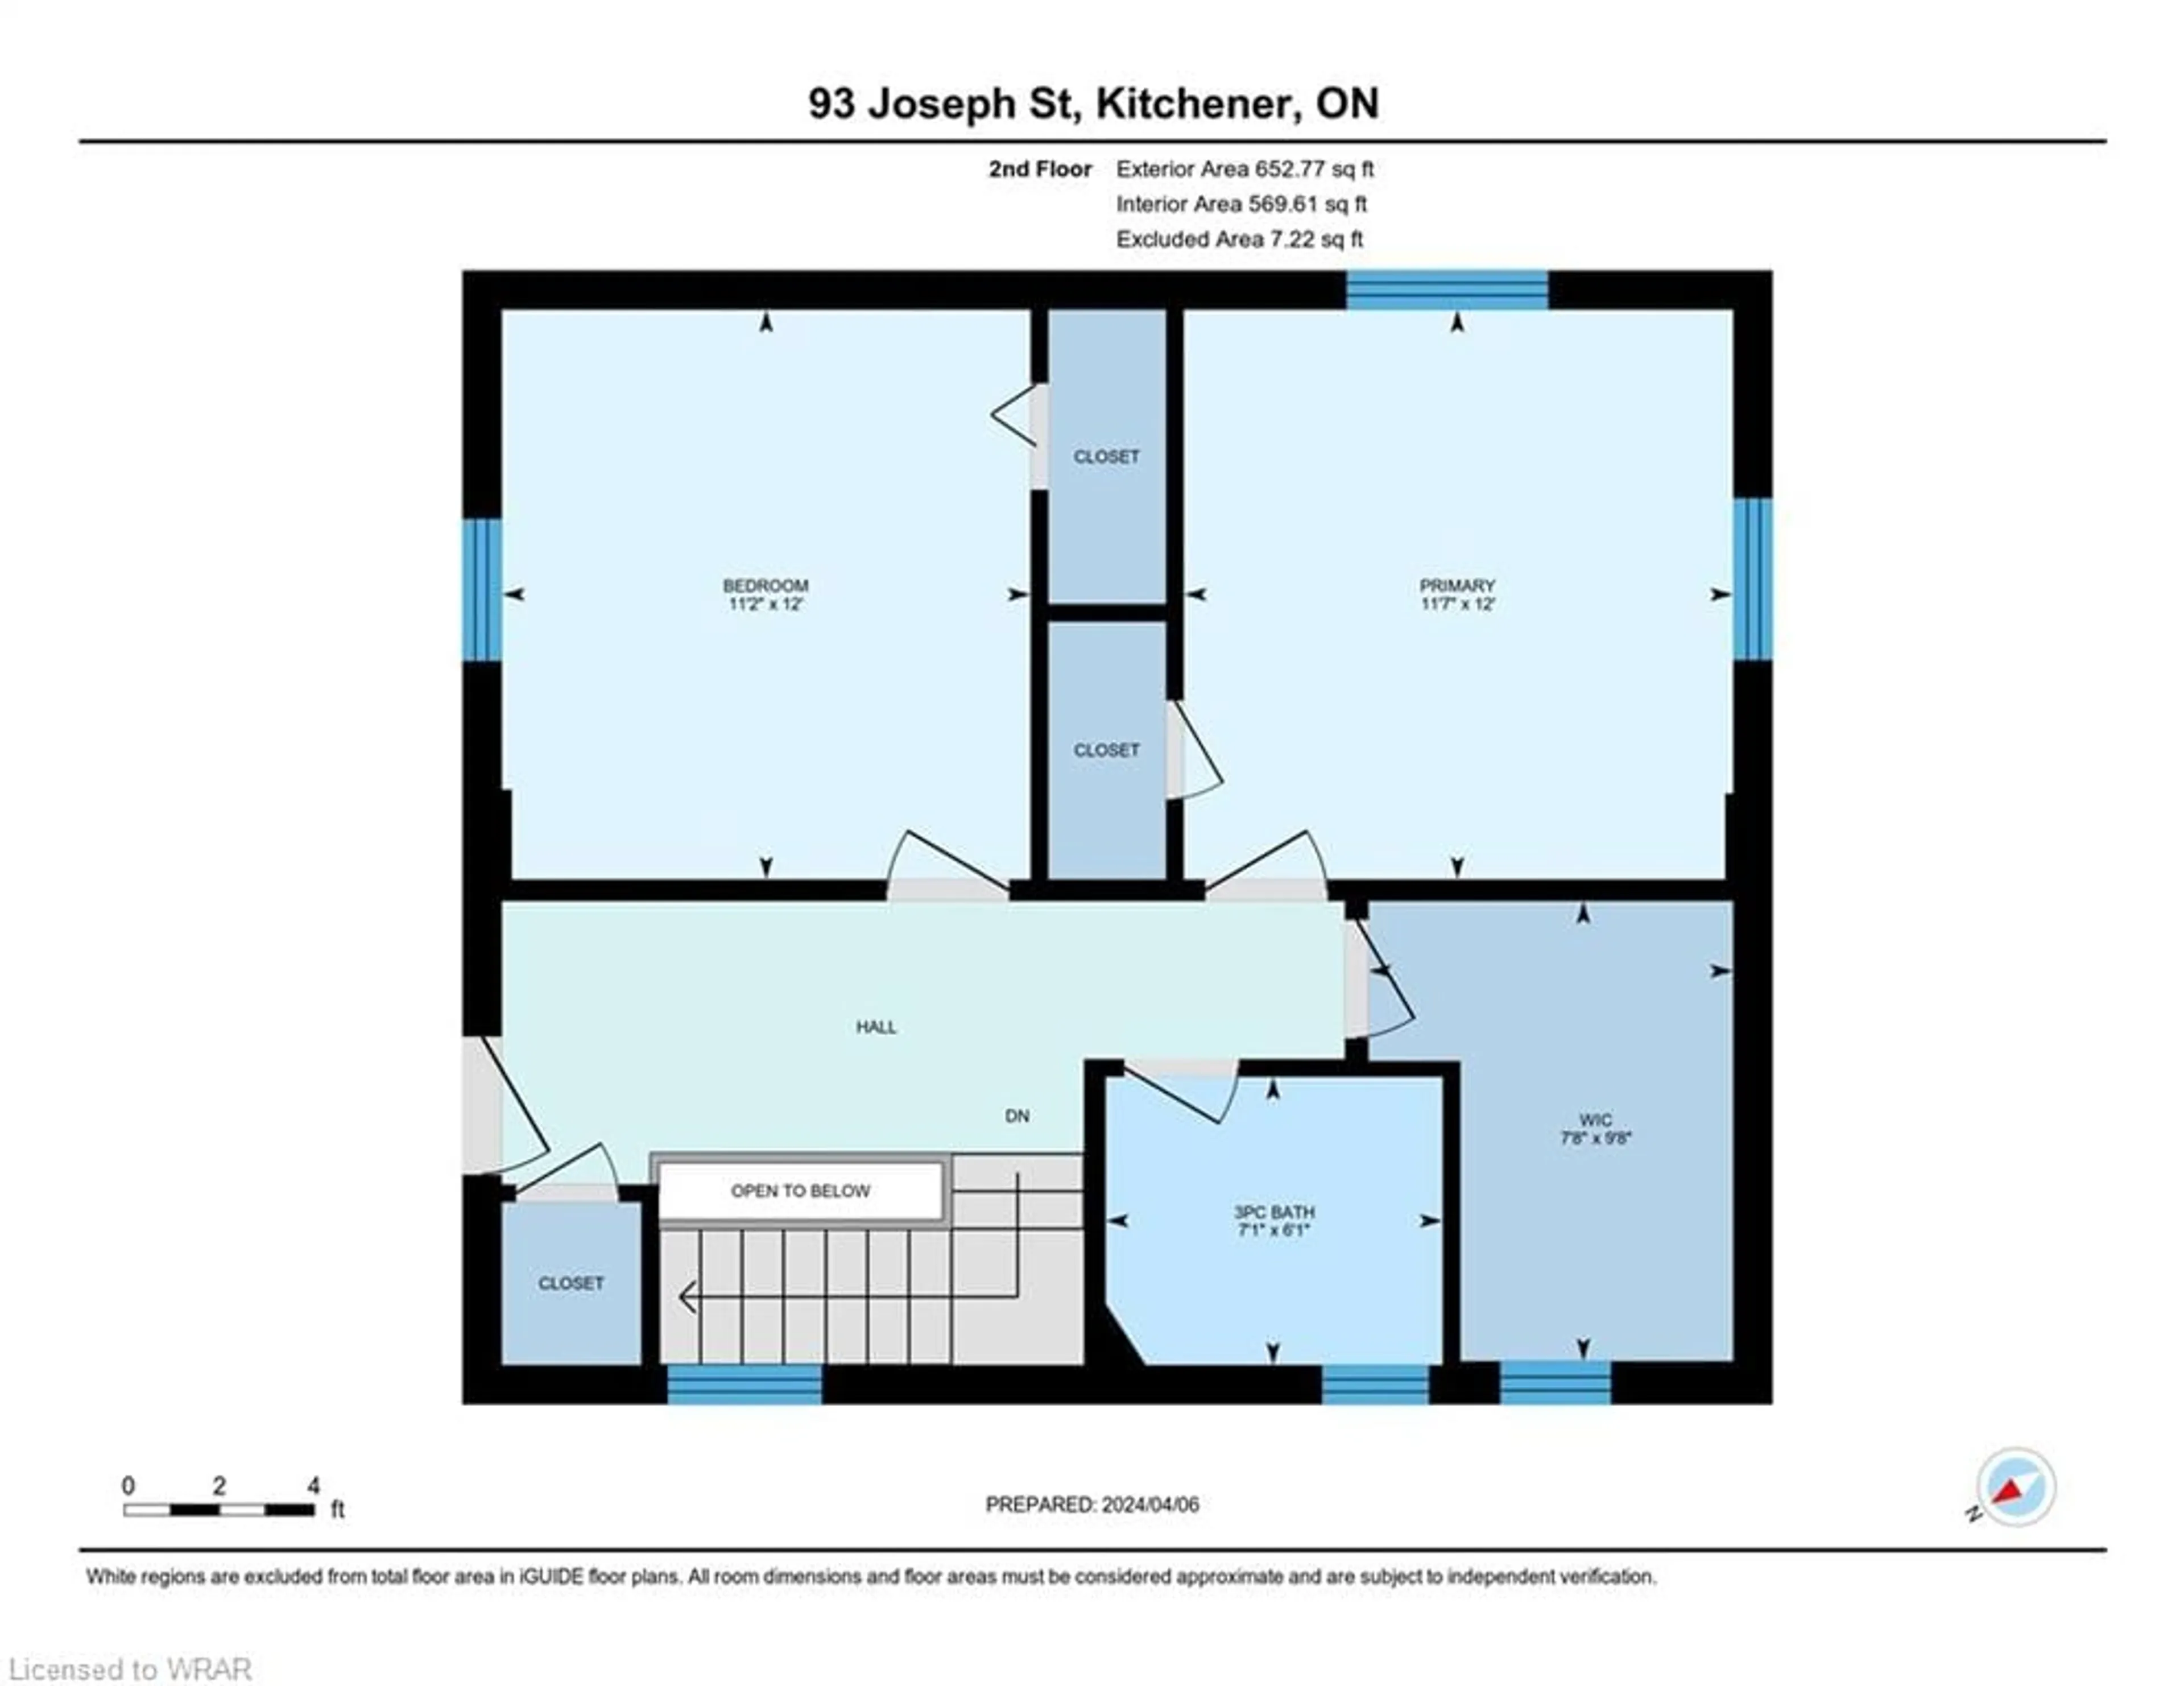 Floor plan for 93 Joseph St, Kitchener Ontario N2G 1J2